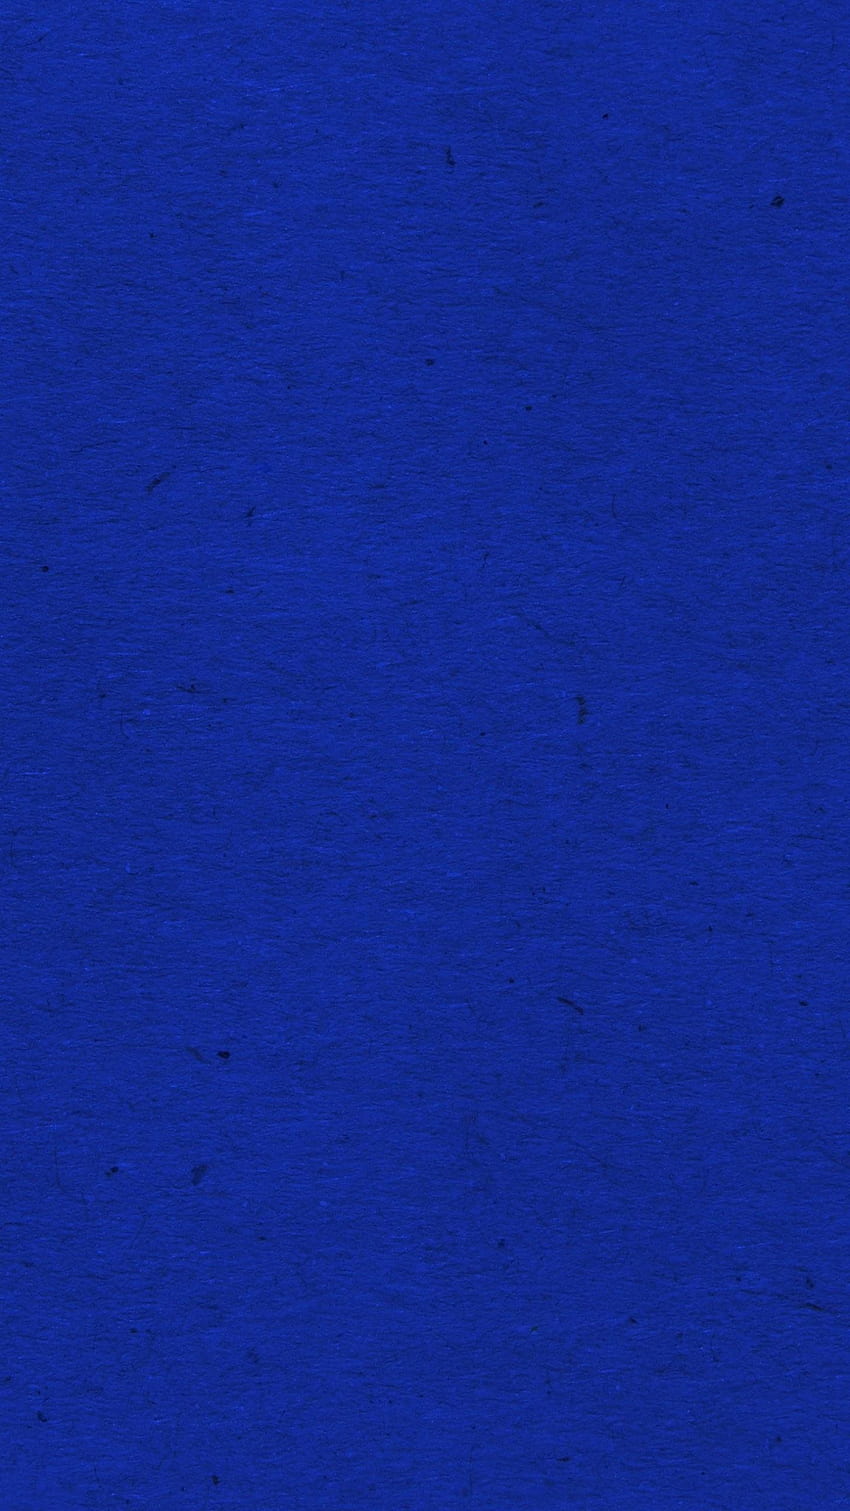 Một vật liệu hoàng gia kết hợp với bề mặt vải màu xanh dương mang lại một sự độc đáo và quý phái cho không gian. Đừng bỏ lỡ cơ hội để chiêm ngưỡng hình ảnh này.